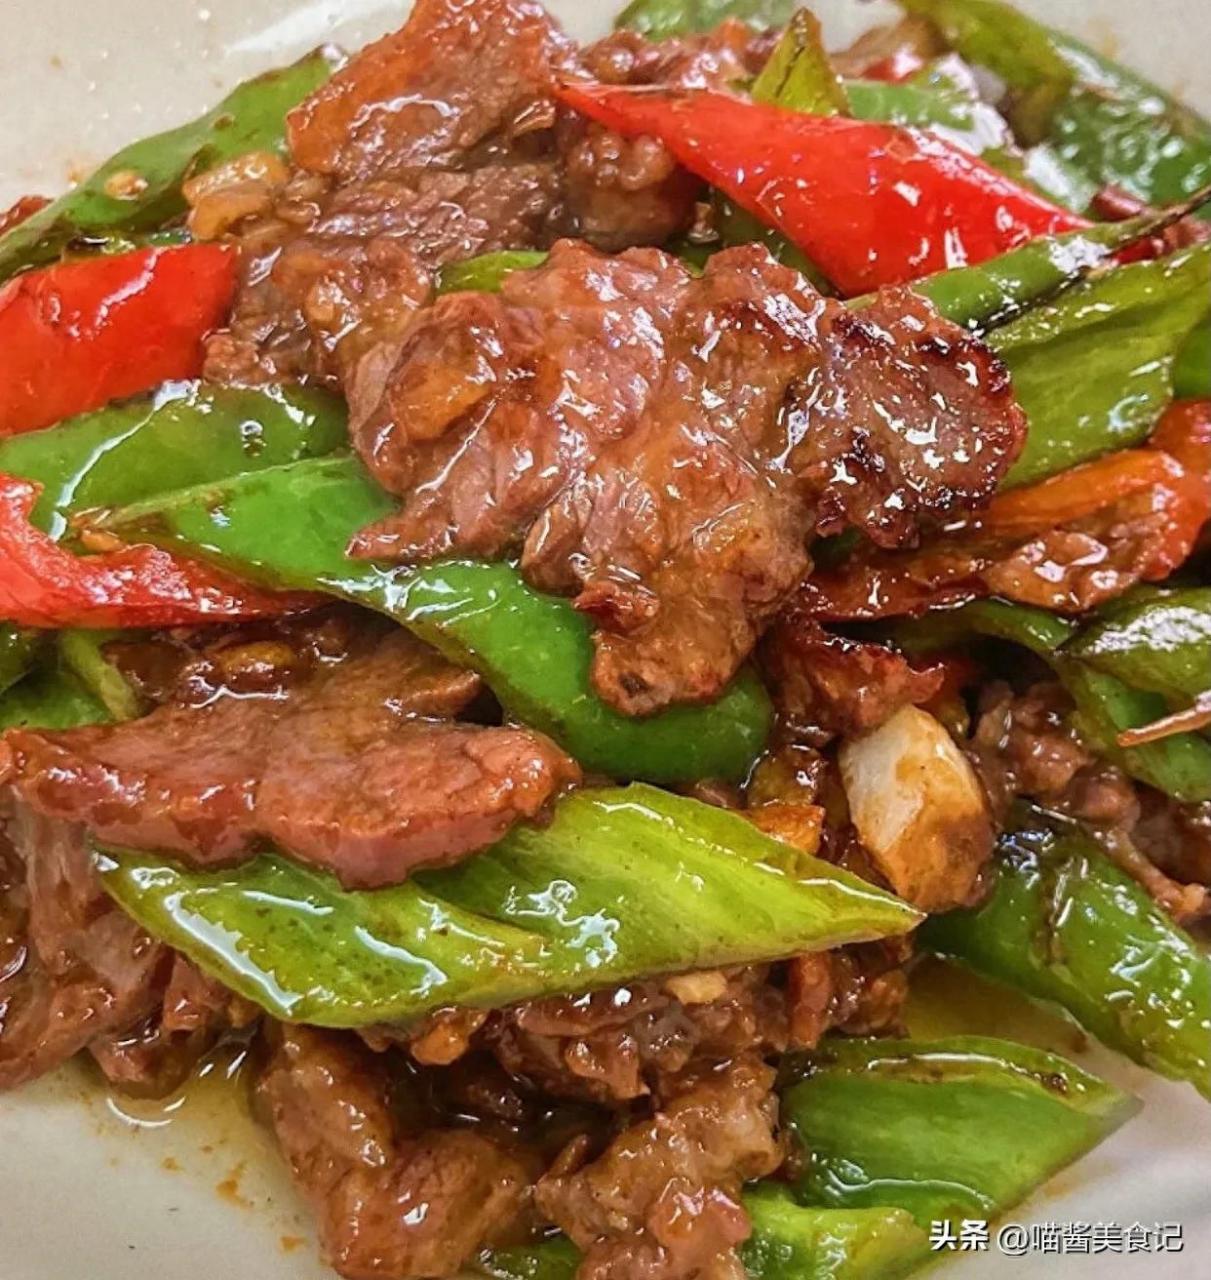 青椒炒牛肉的做法及腌制牛肉的详细步骤，口感鲜美营养丰富-东方美食